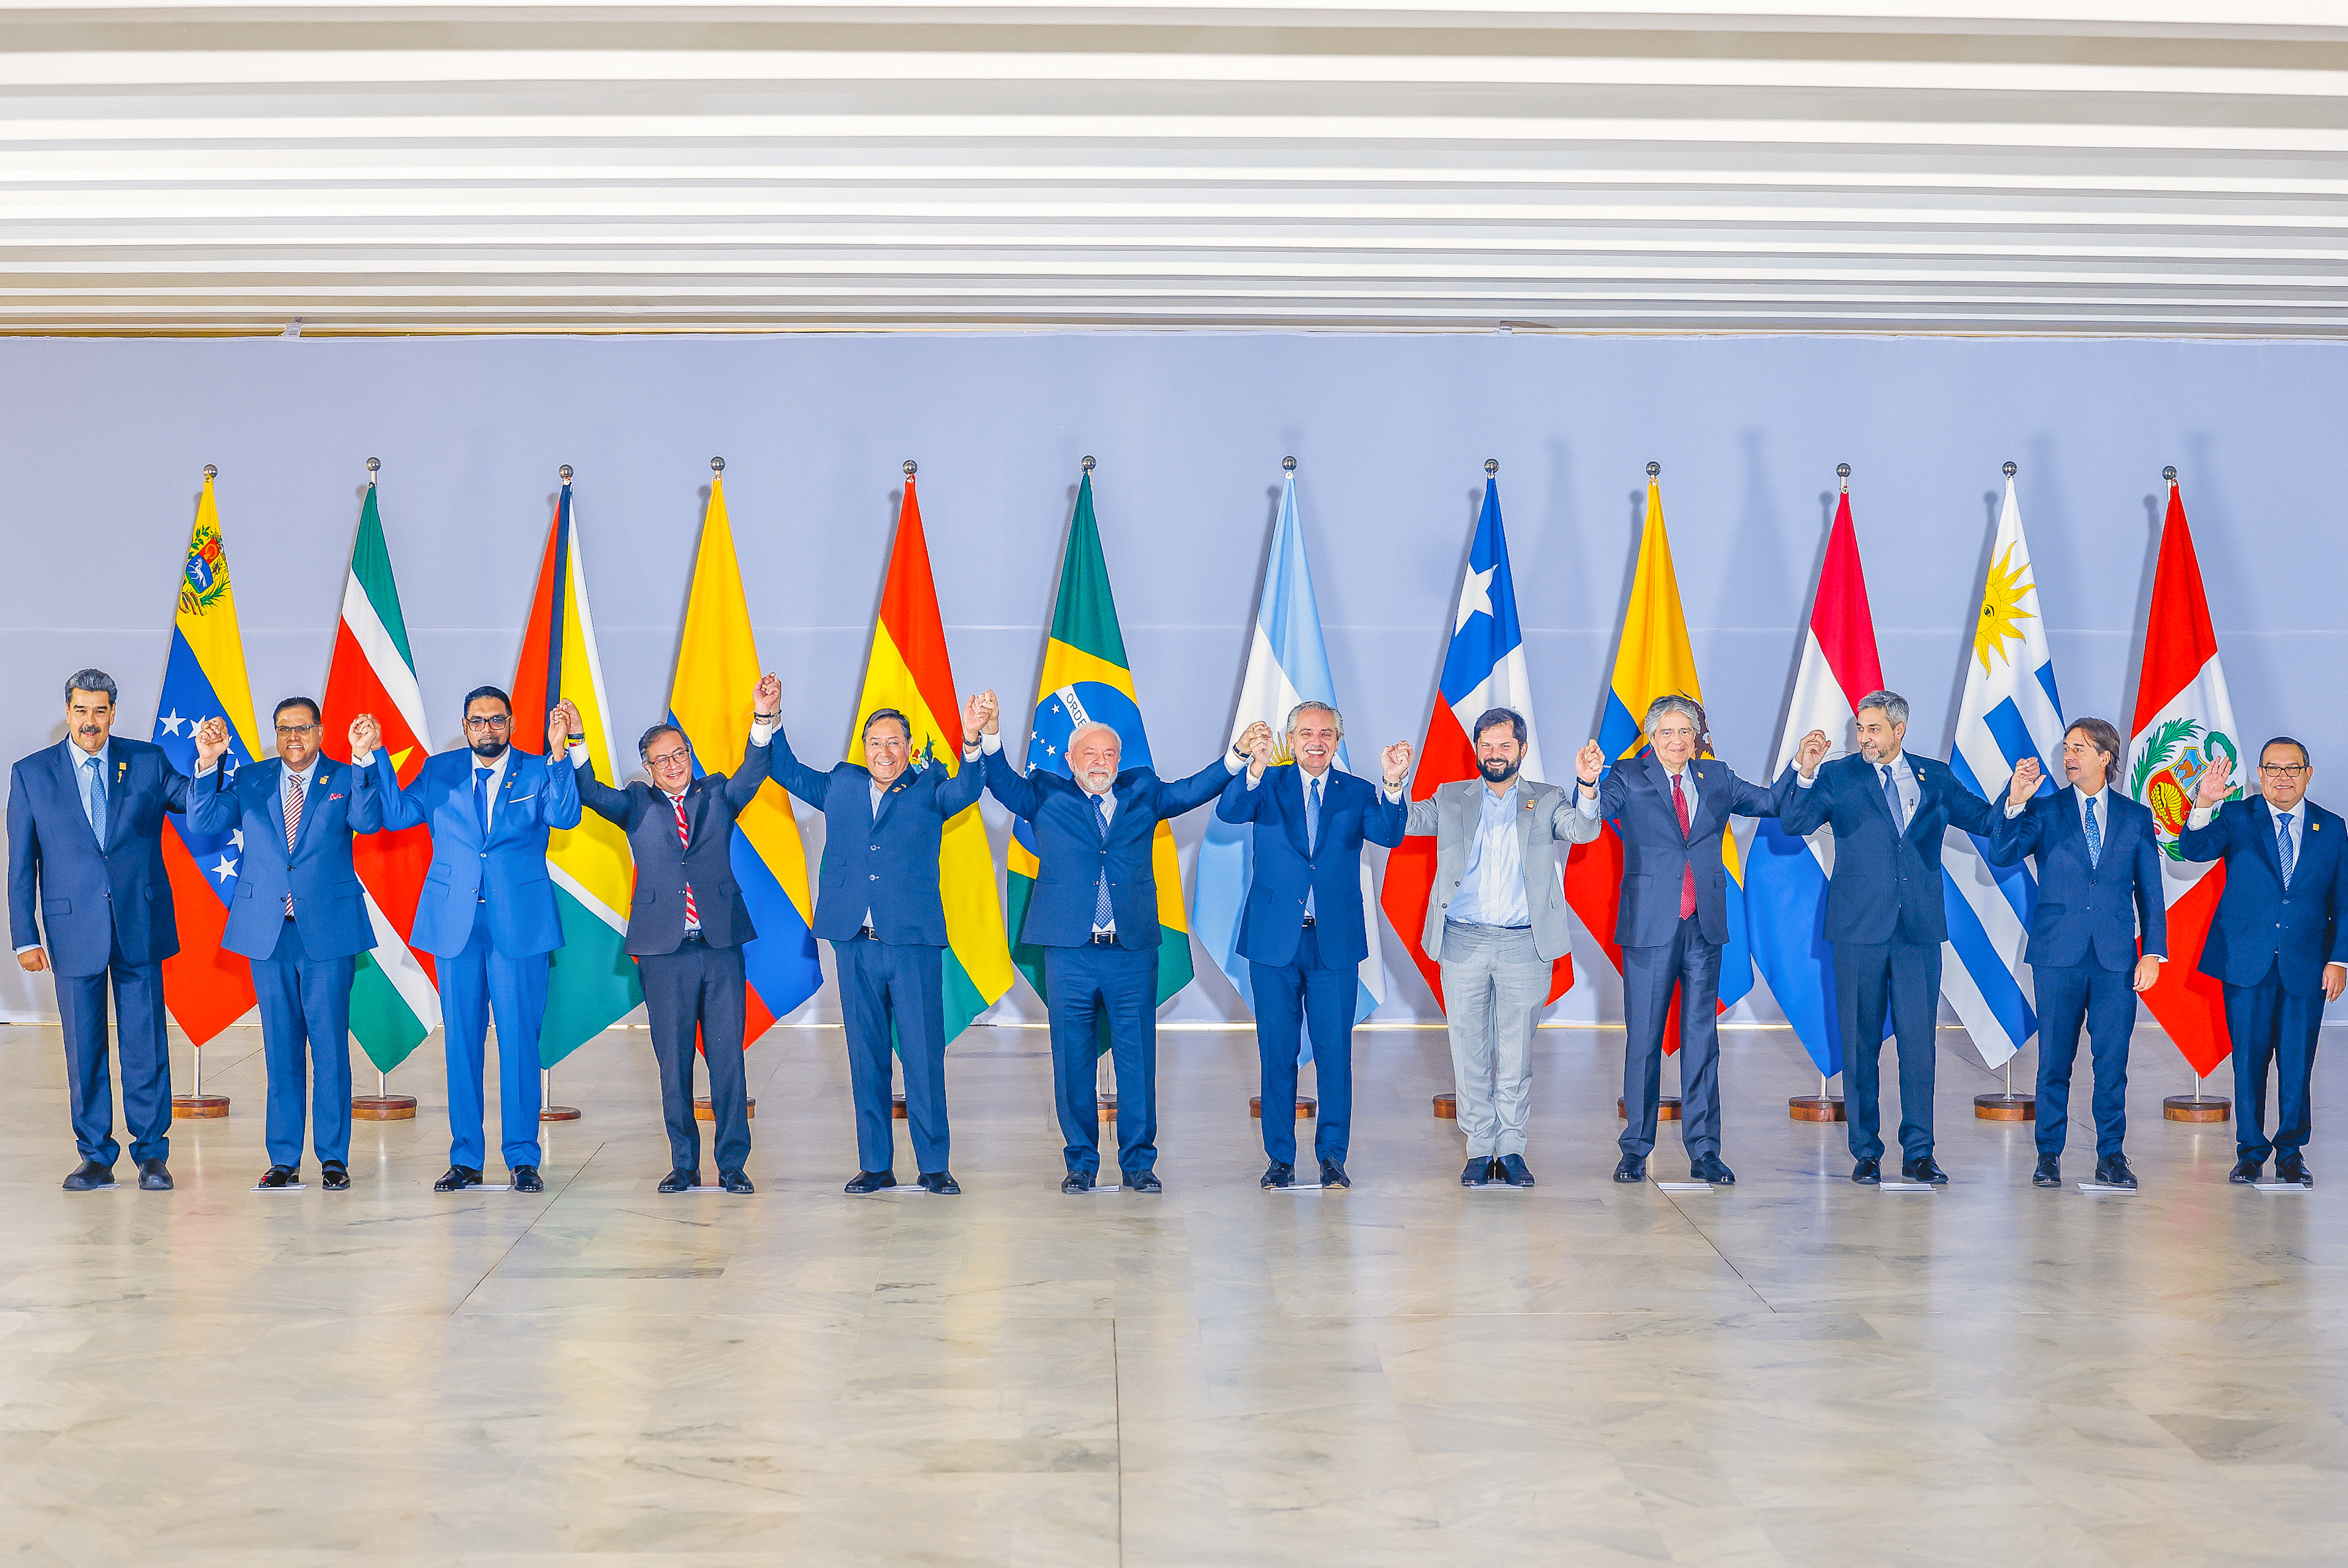 Presidentes da América do Sul erguem as mãos unidades, em frente as bandeiras dos seus países